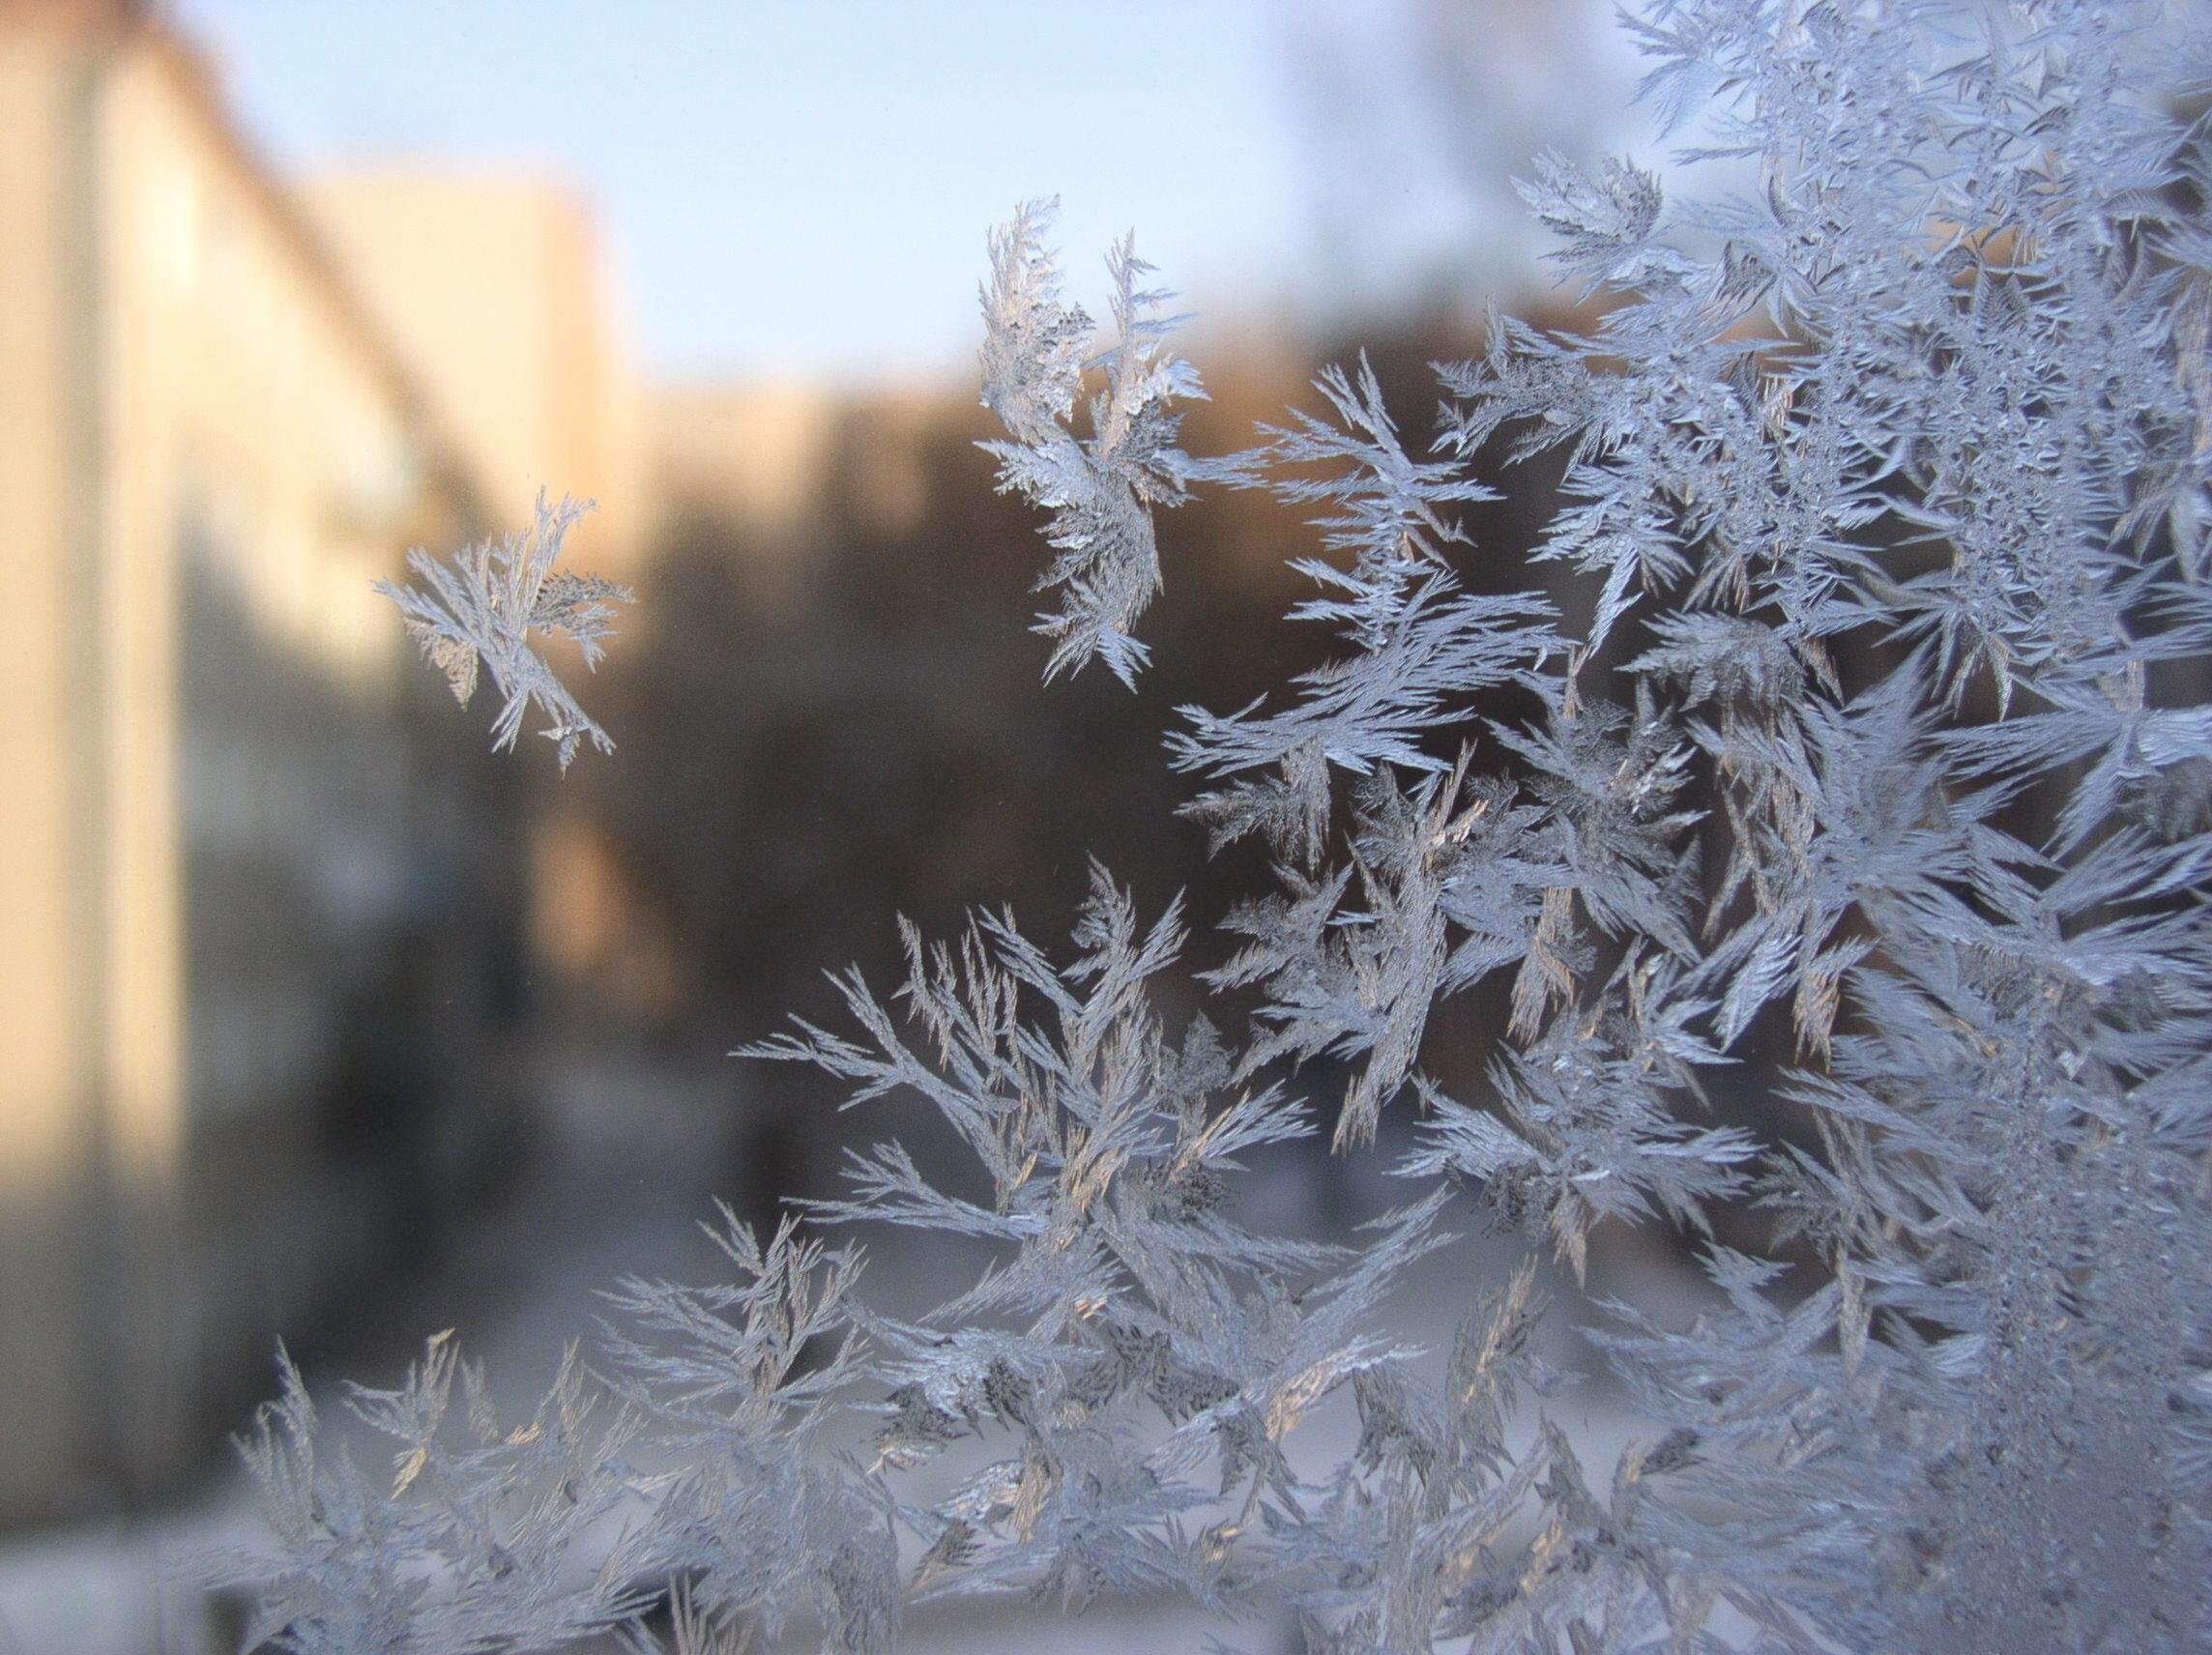 Сильные морозы сковали. Мороз. Иней на окне. Мороз на окне. Окно зимнее с инеем.